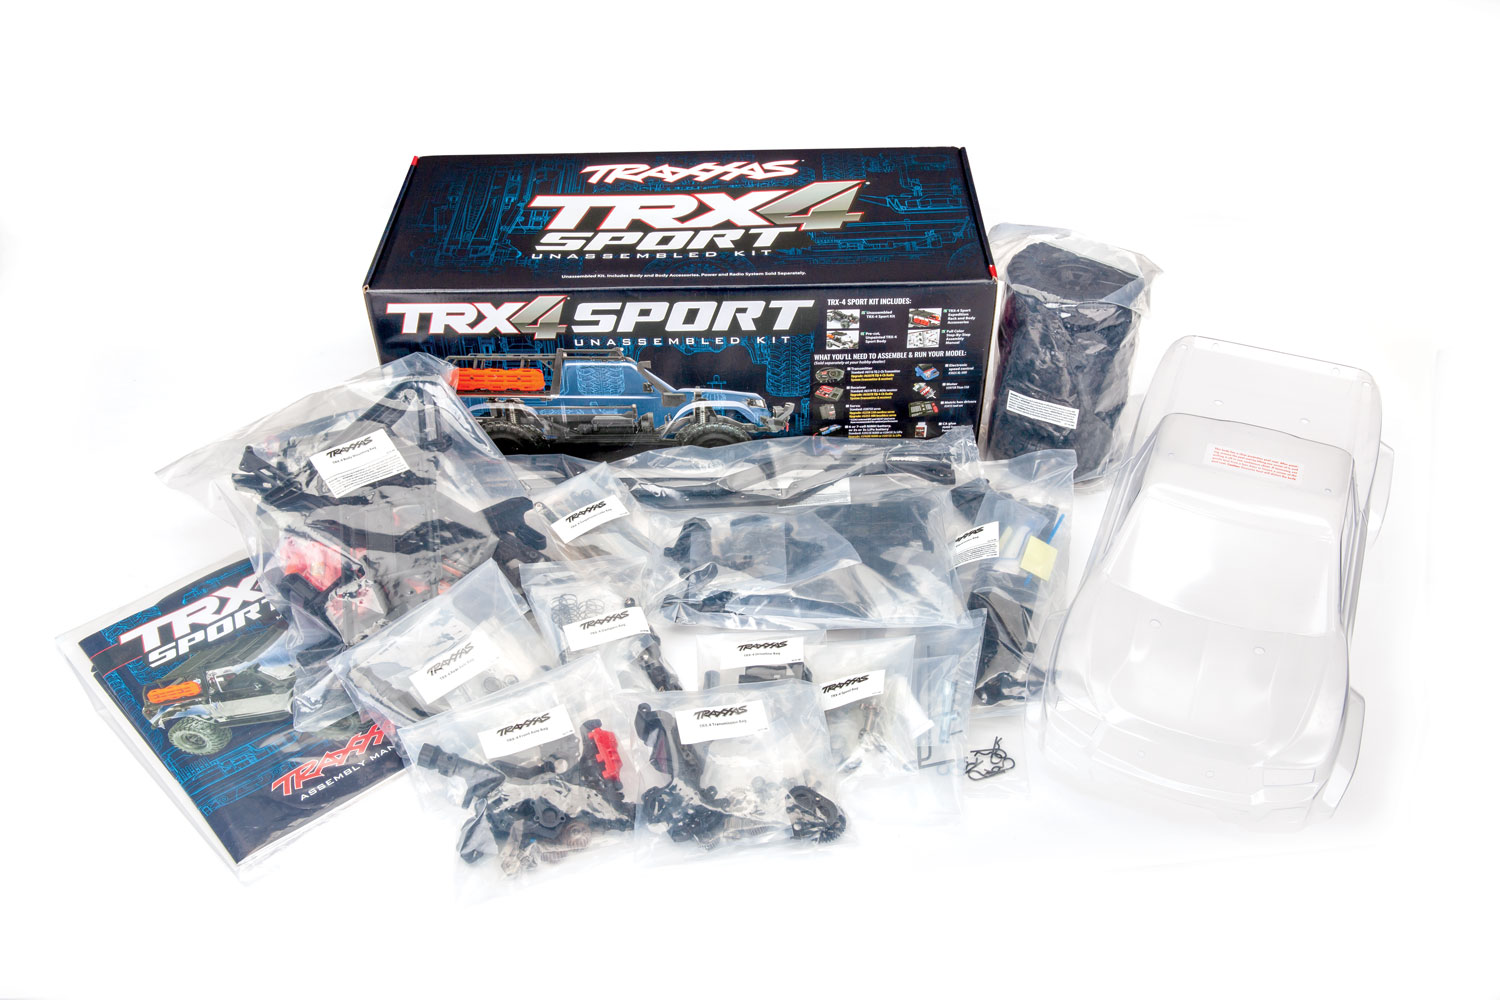 Inhalt des TRX-4 Kits